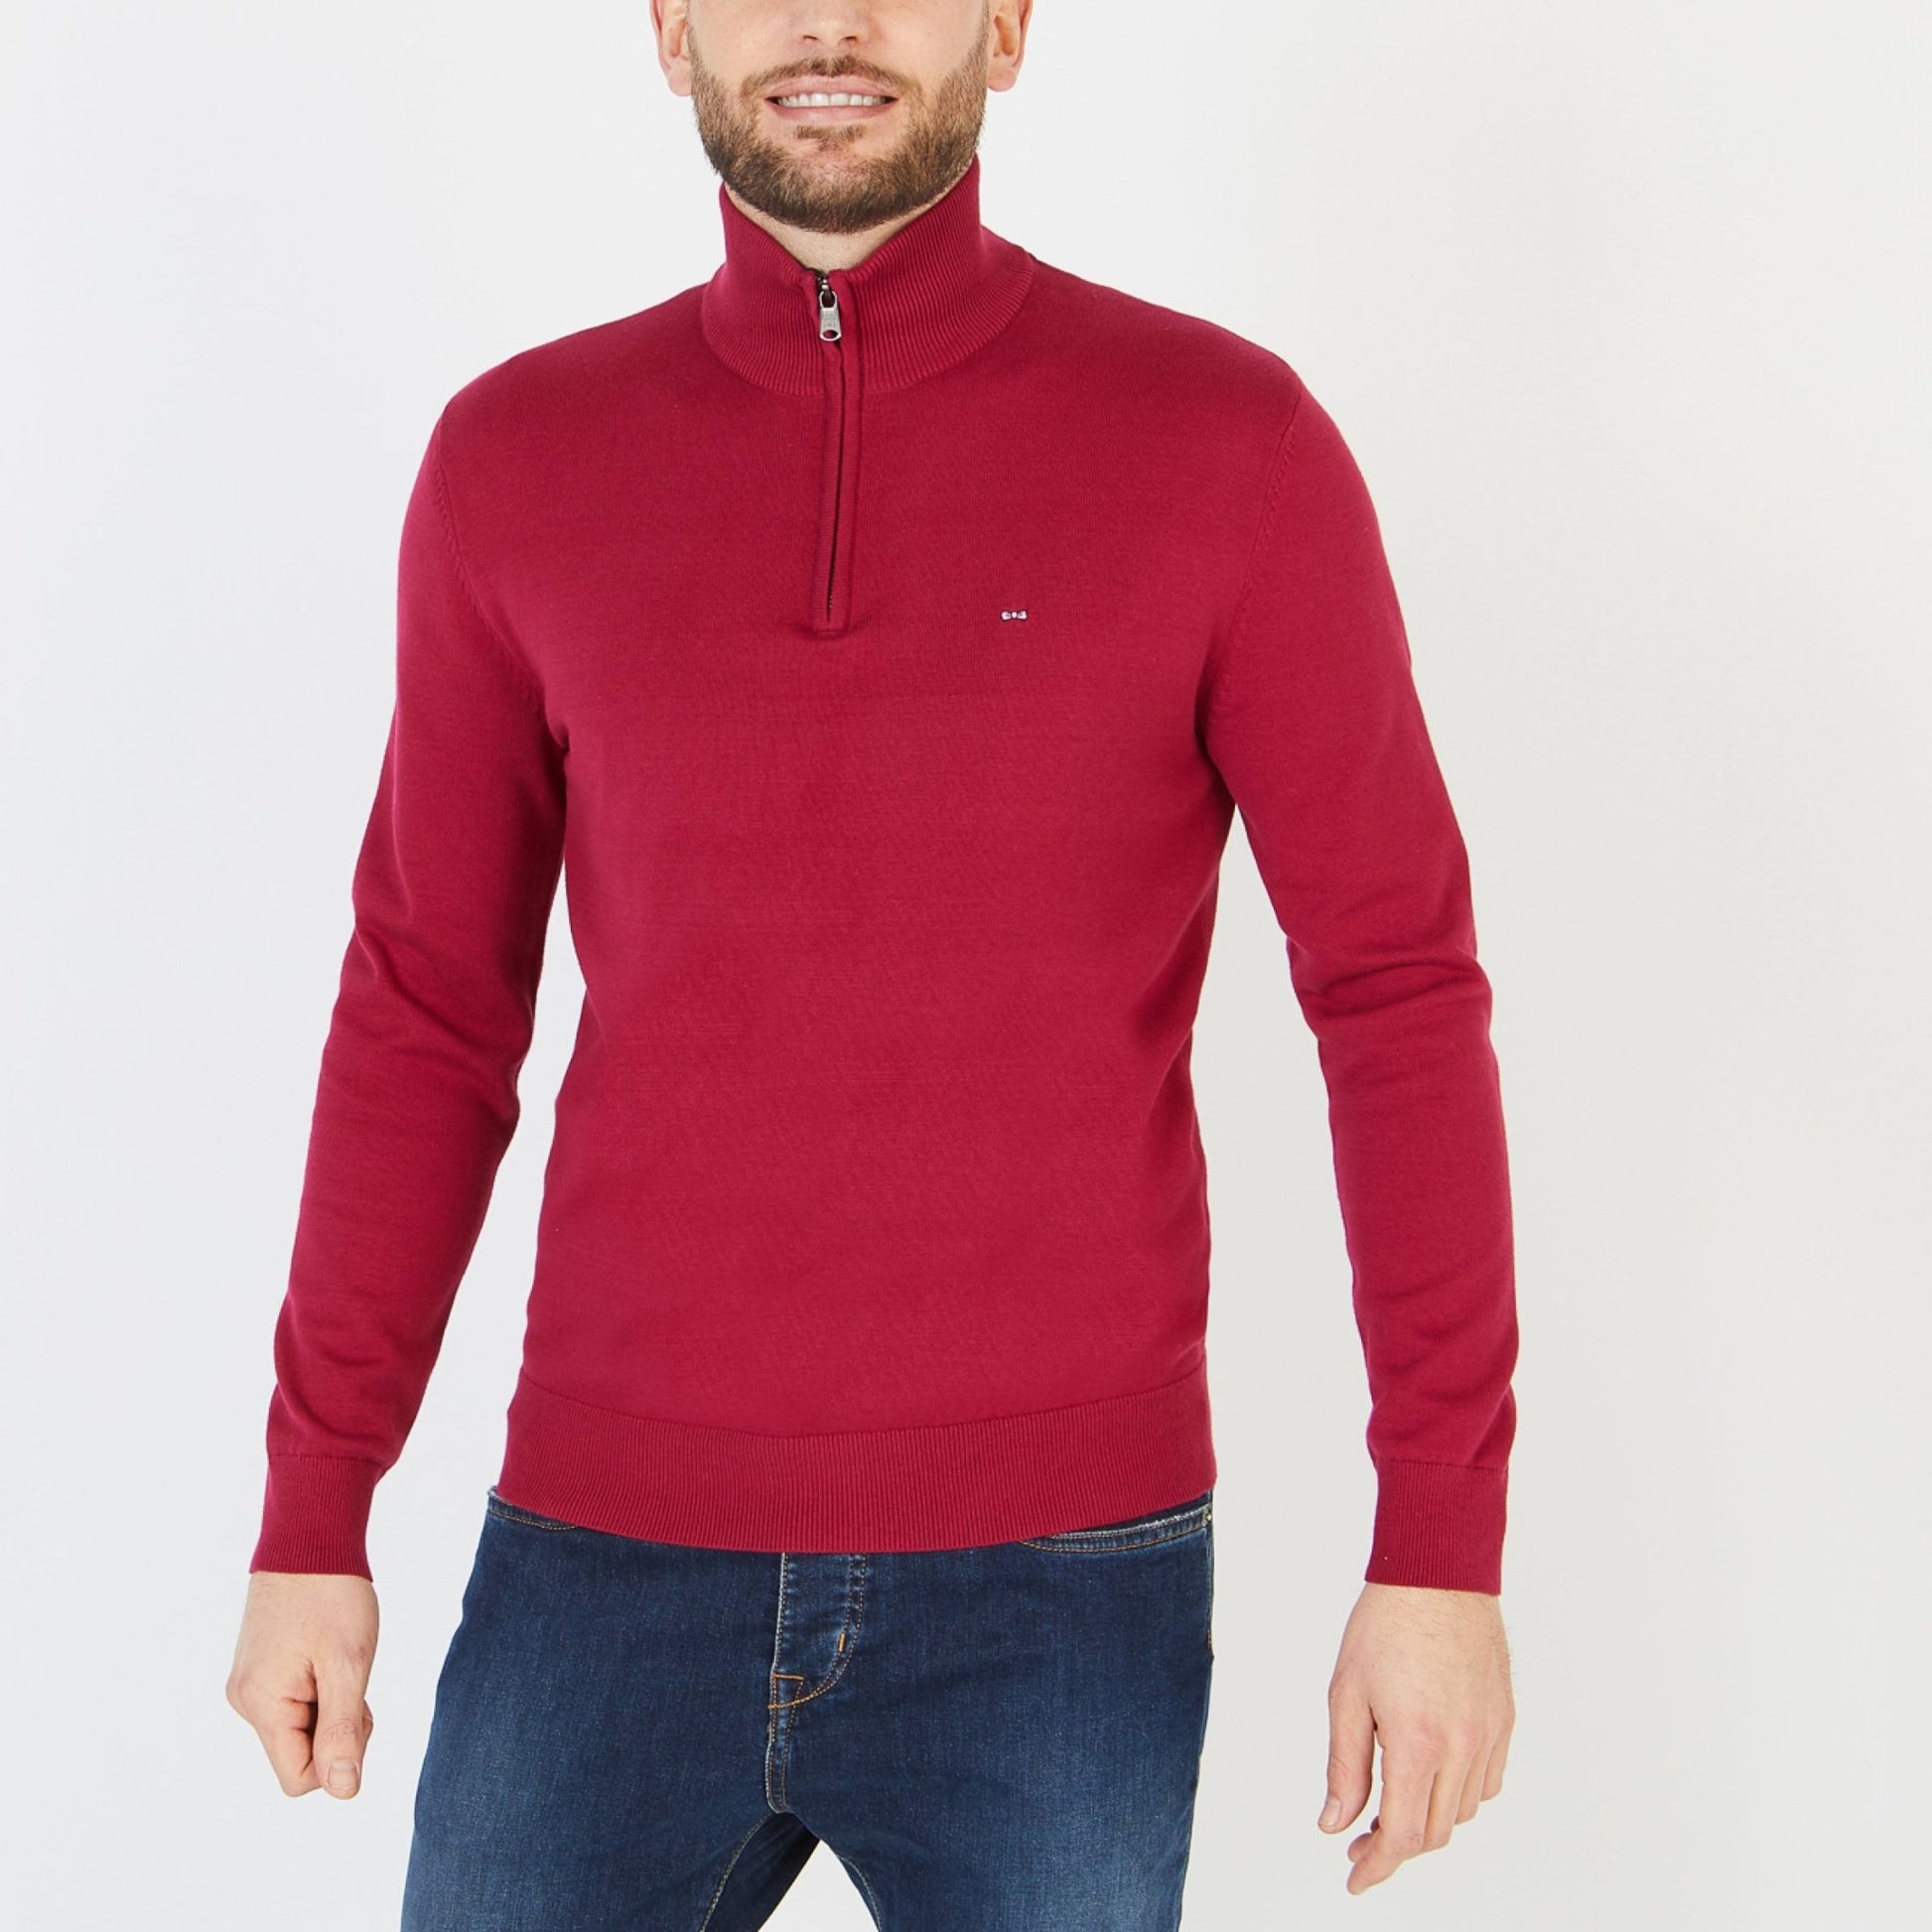 Eden Park Quarter Zip Sweater - Matt O'Brien Fashions